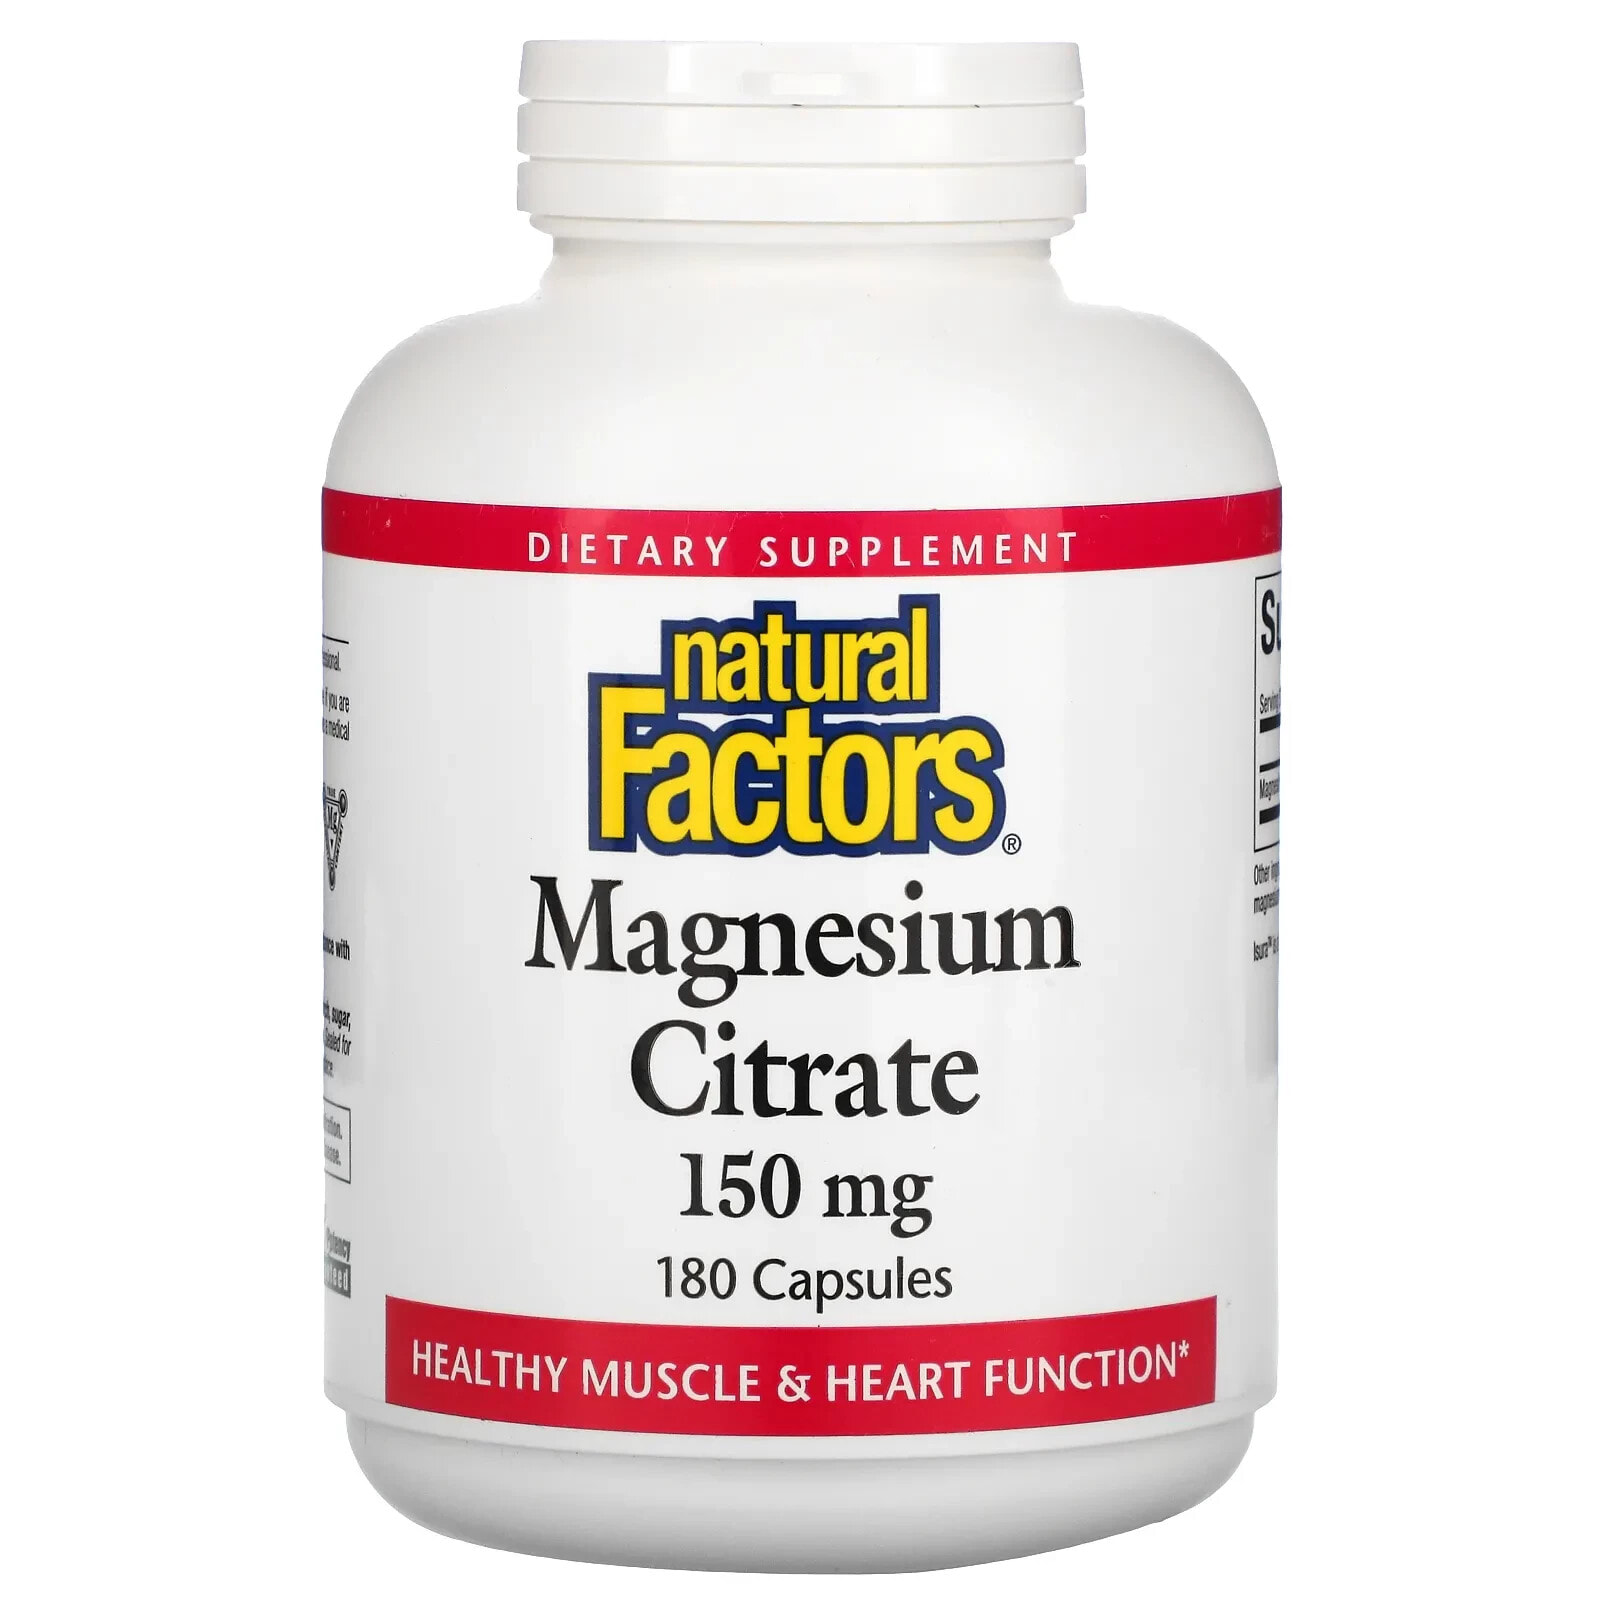 Natural Factors, Цитрат магния, 150 мг, 360 капсул